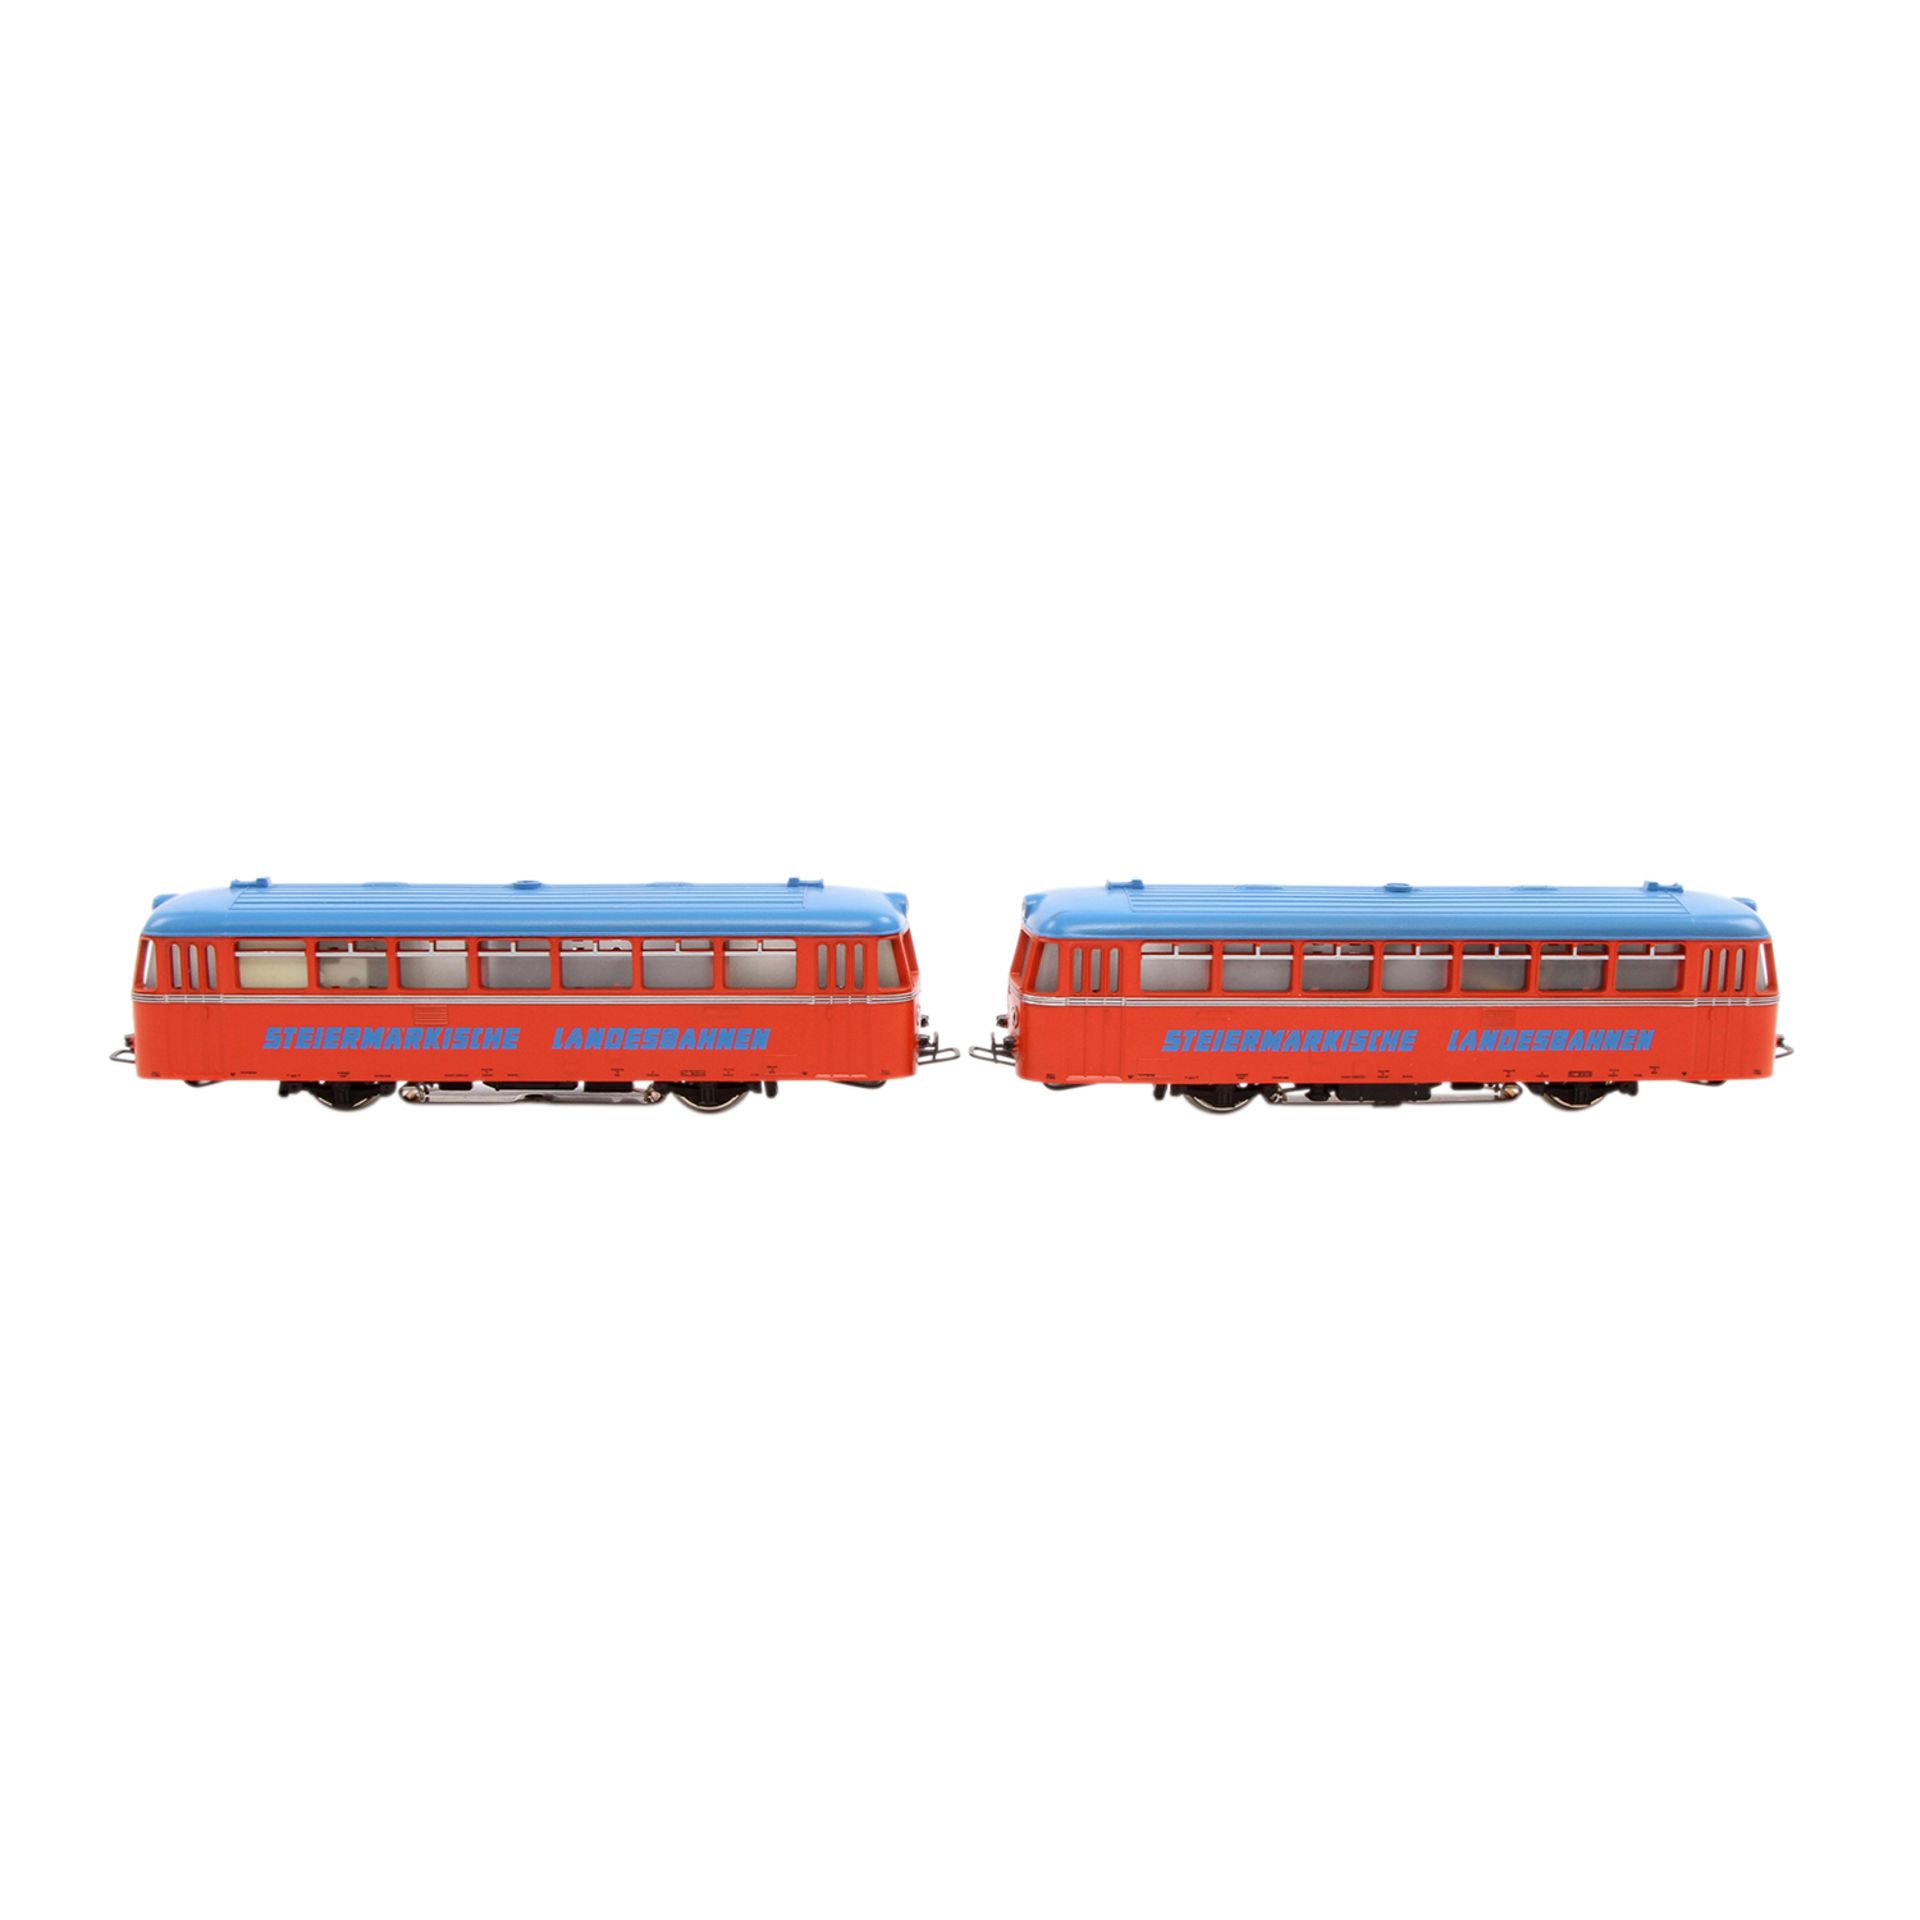 MÄRKLIN Schienenbus mit Beiwagen 3140, Spur H0, Kunststoff-Gehäuse, rot m. blauem Dach, VT 21 und VS - Bild 5 aus 8